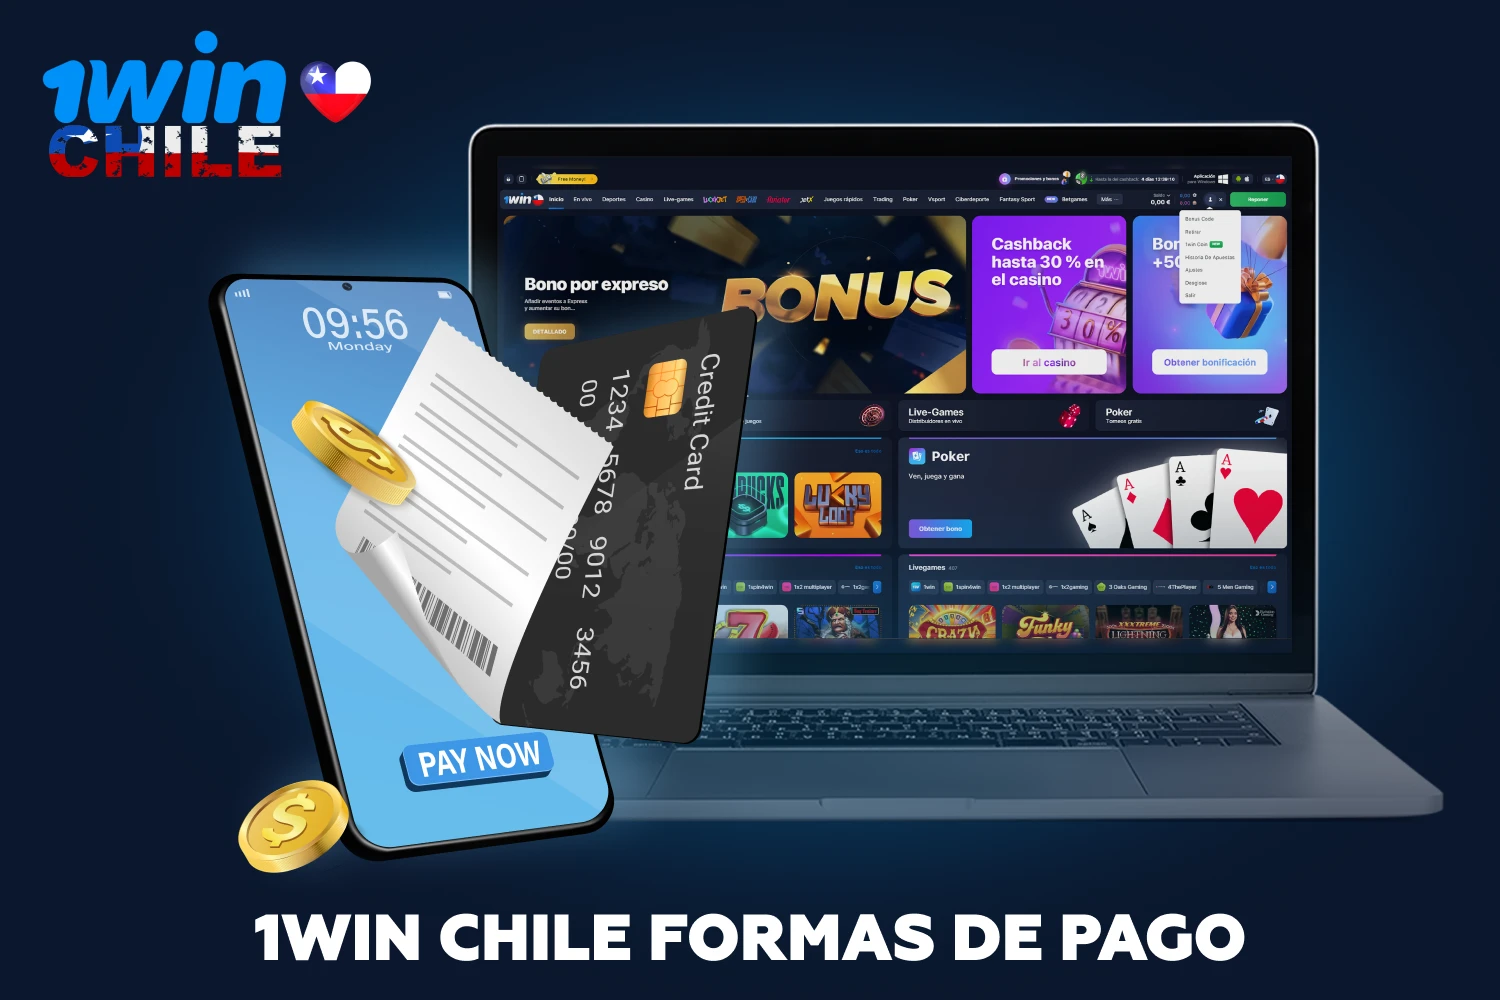 En el sitio web de 1win, los jugadores chilenos pueden depositar fondos en sus cuentas en cuestión de minutos mediante cualquier método cómodo